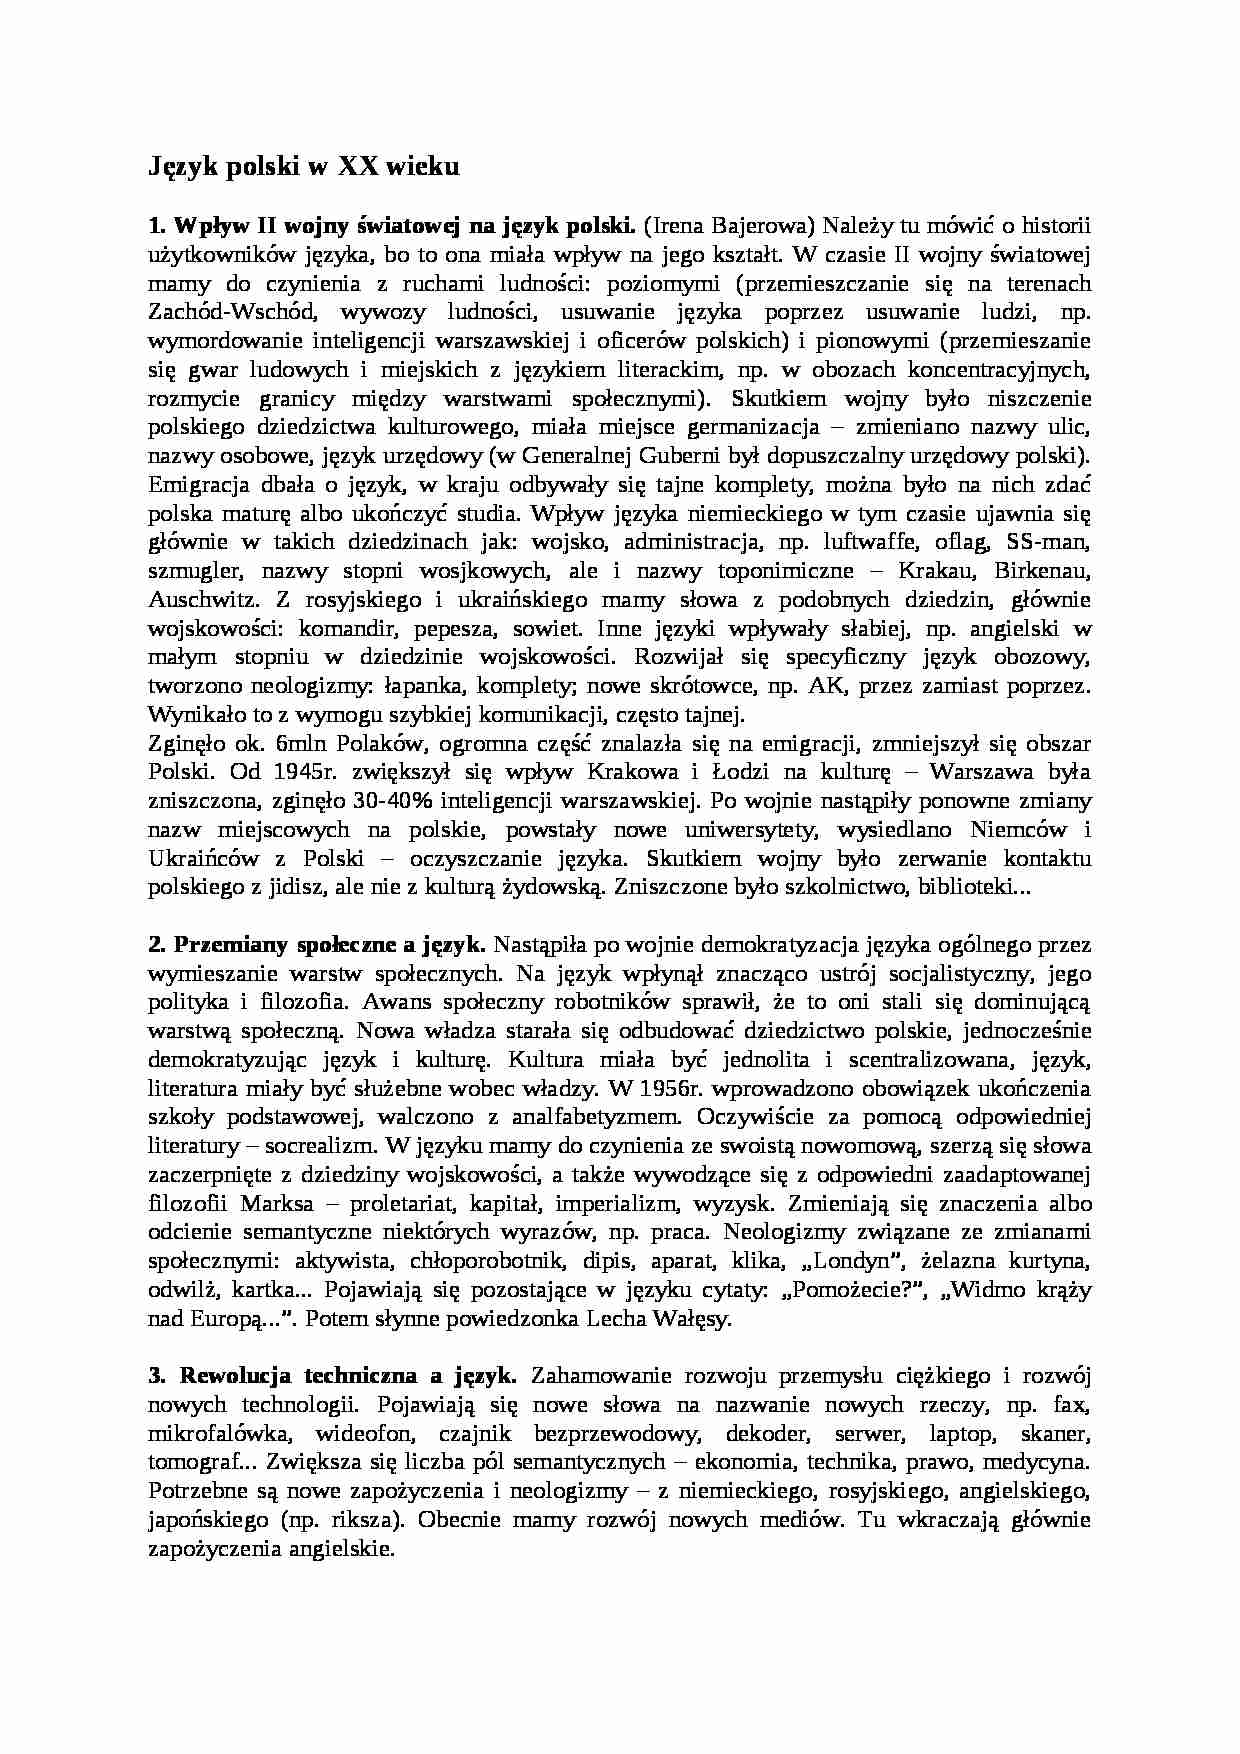 Język polski w XX wieku-opracowanie - strona 1